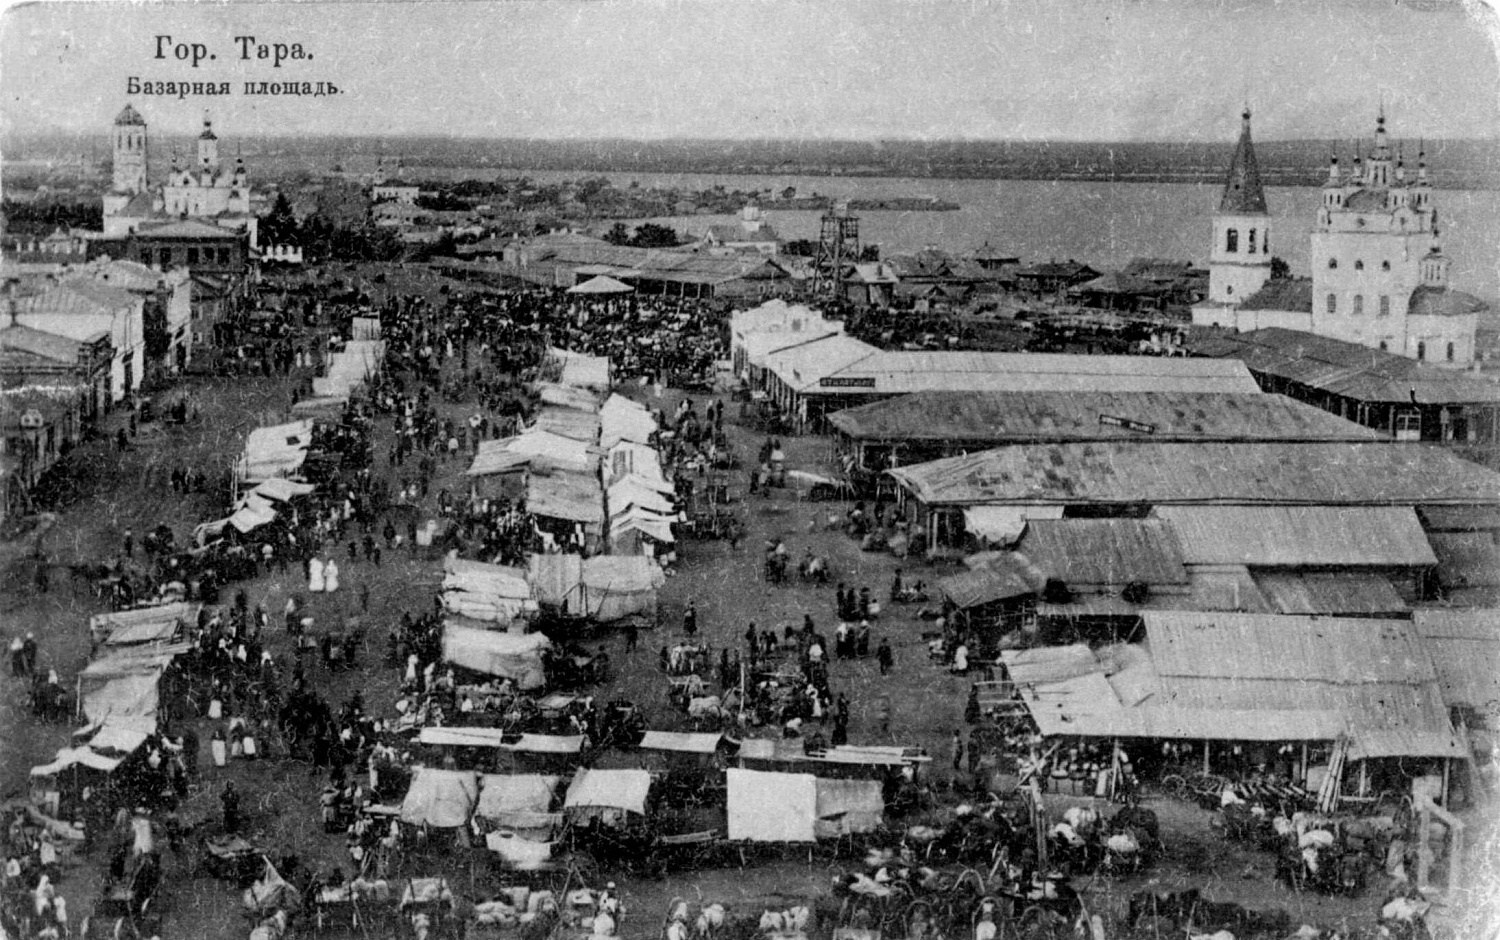 Базарная площадь Тары, 1913 год